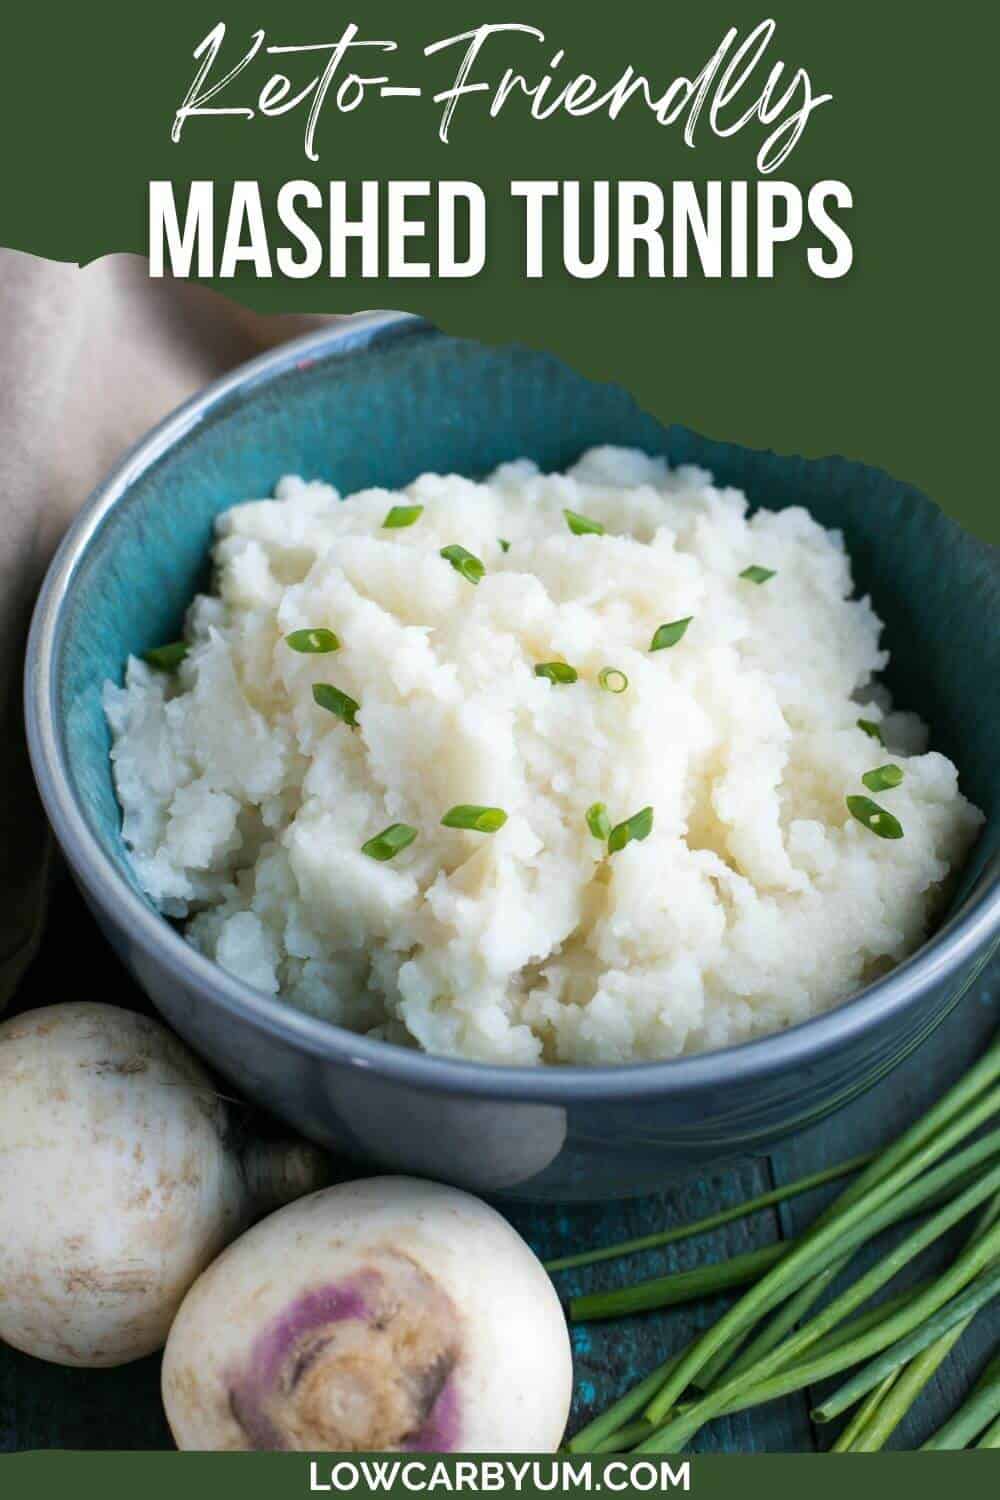 mashed turnips pinterest image.